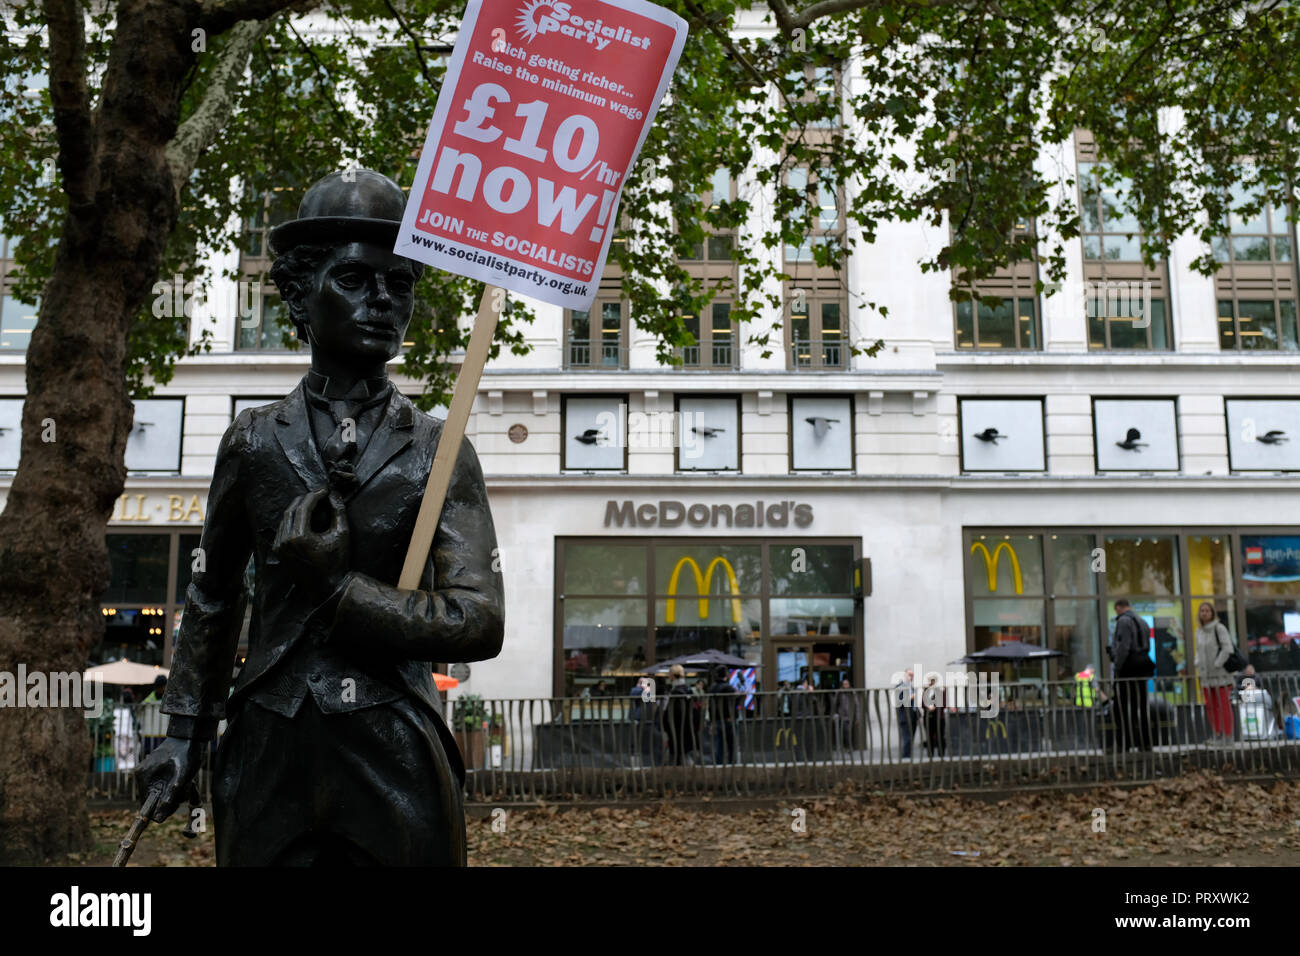 Une sculpture de Charles Chaplin vu holding une affiche disant £10/h Maintenant ! Au cours de la protestation. TGI Fridays, Wetherspoons, et McDonald's ensemble rassemblement de travailleurs à Londres pour réclamer de meilleures conditions de travail et une rémunération équitable dans l'industrie de l'accueil. Banque D'Images